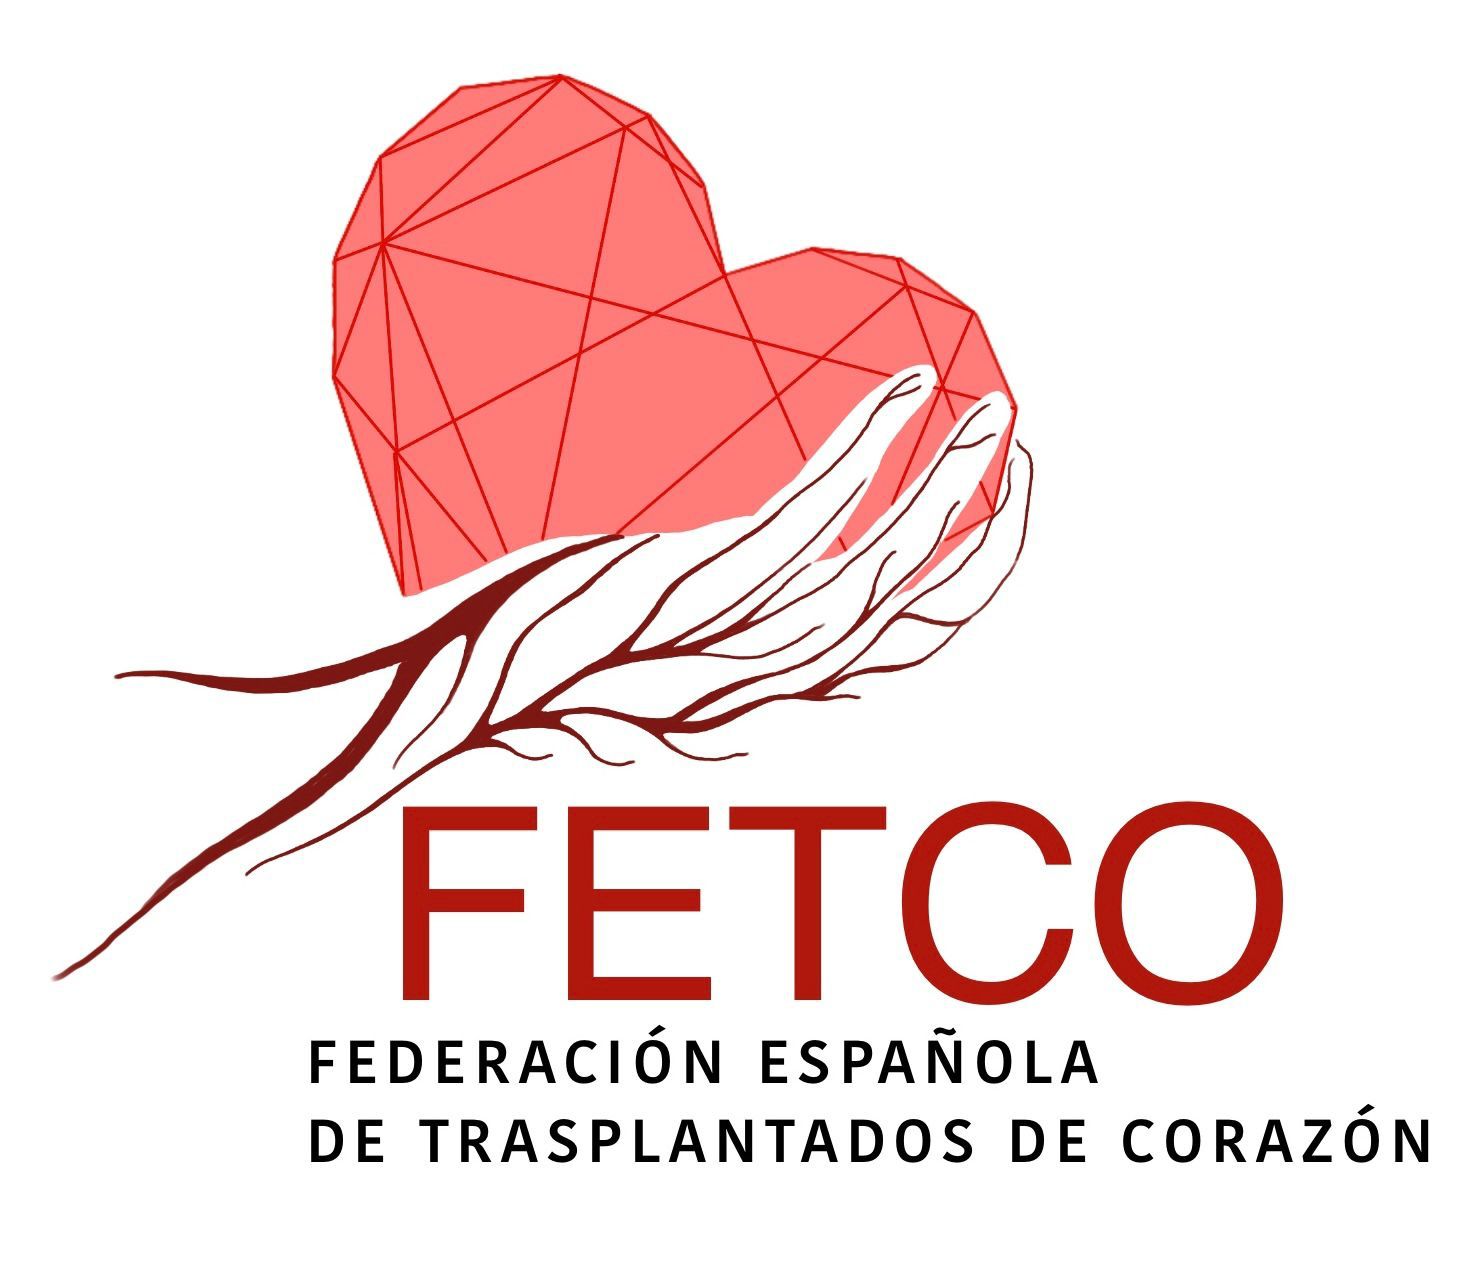 Federación Española de Trasplantados de Corazón (FETCO) 